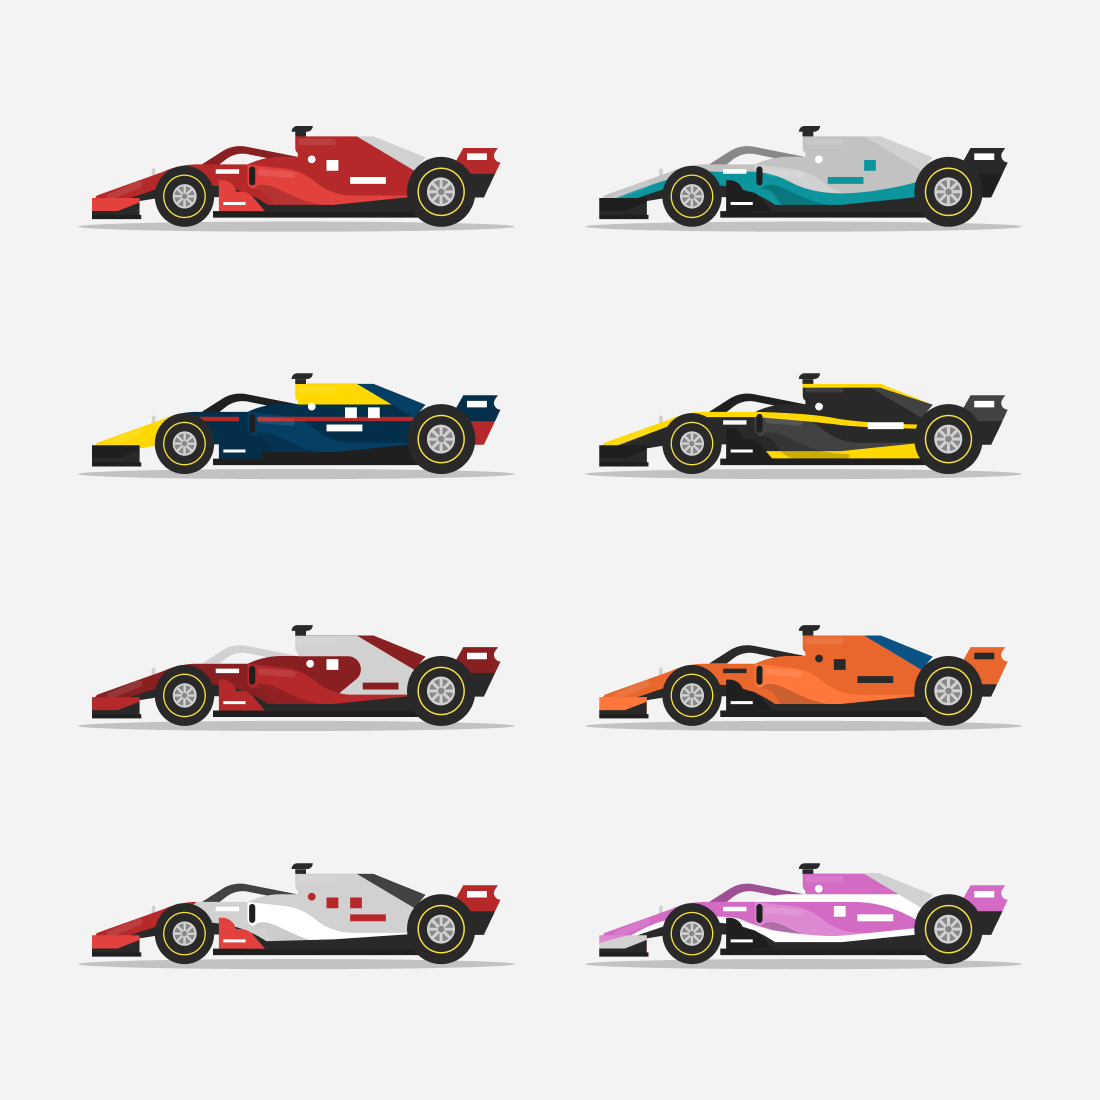 Race car SVG bundle.